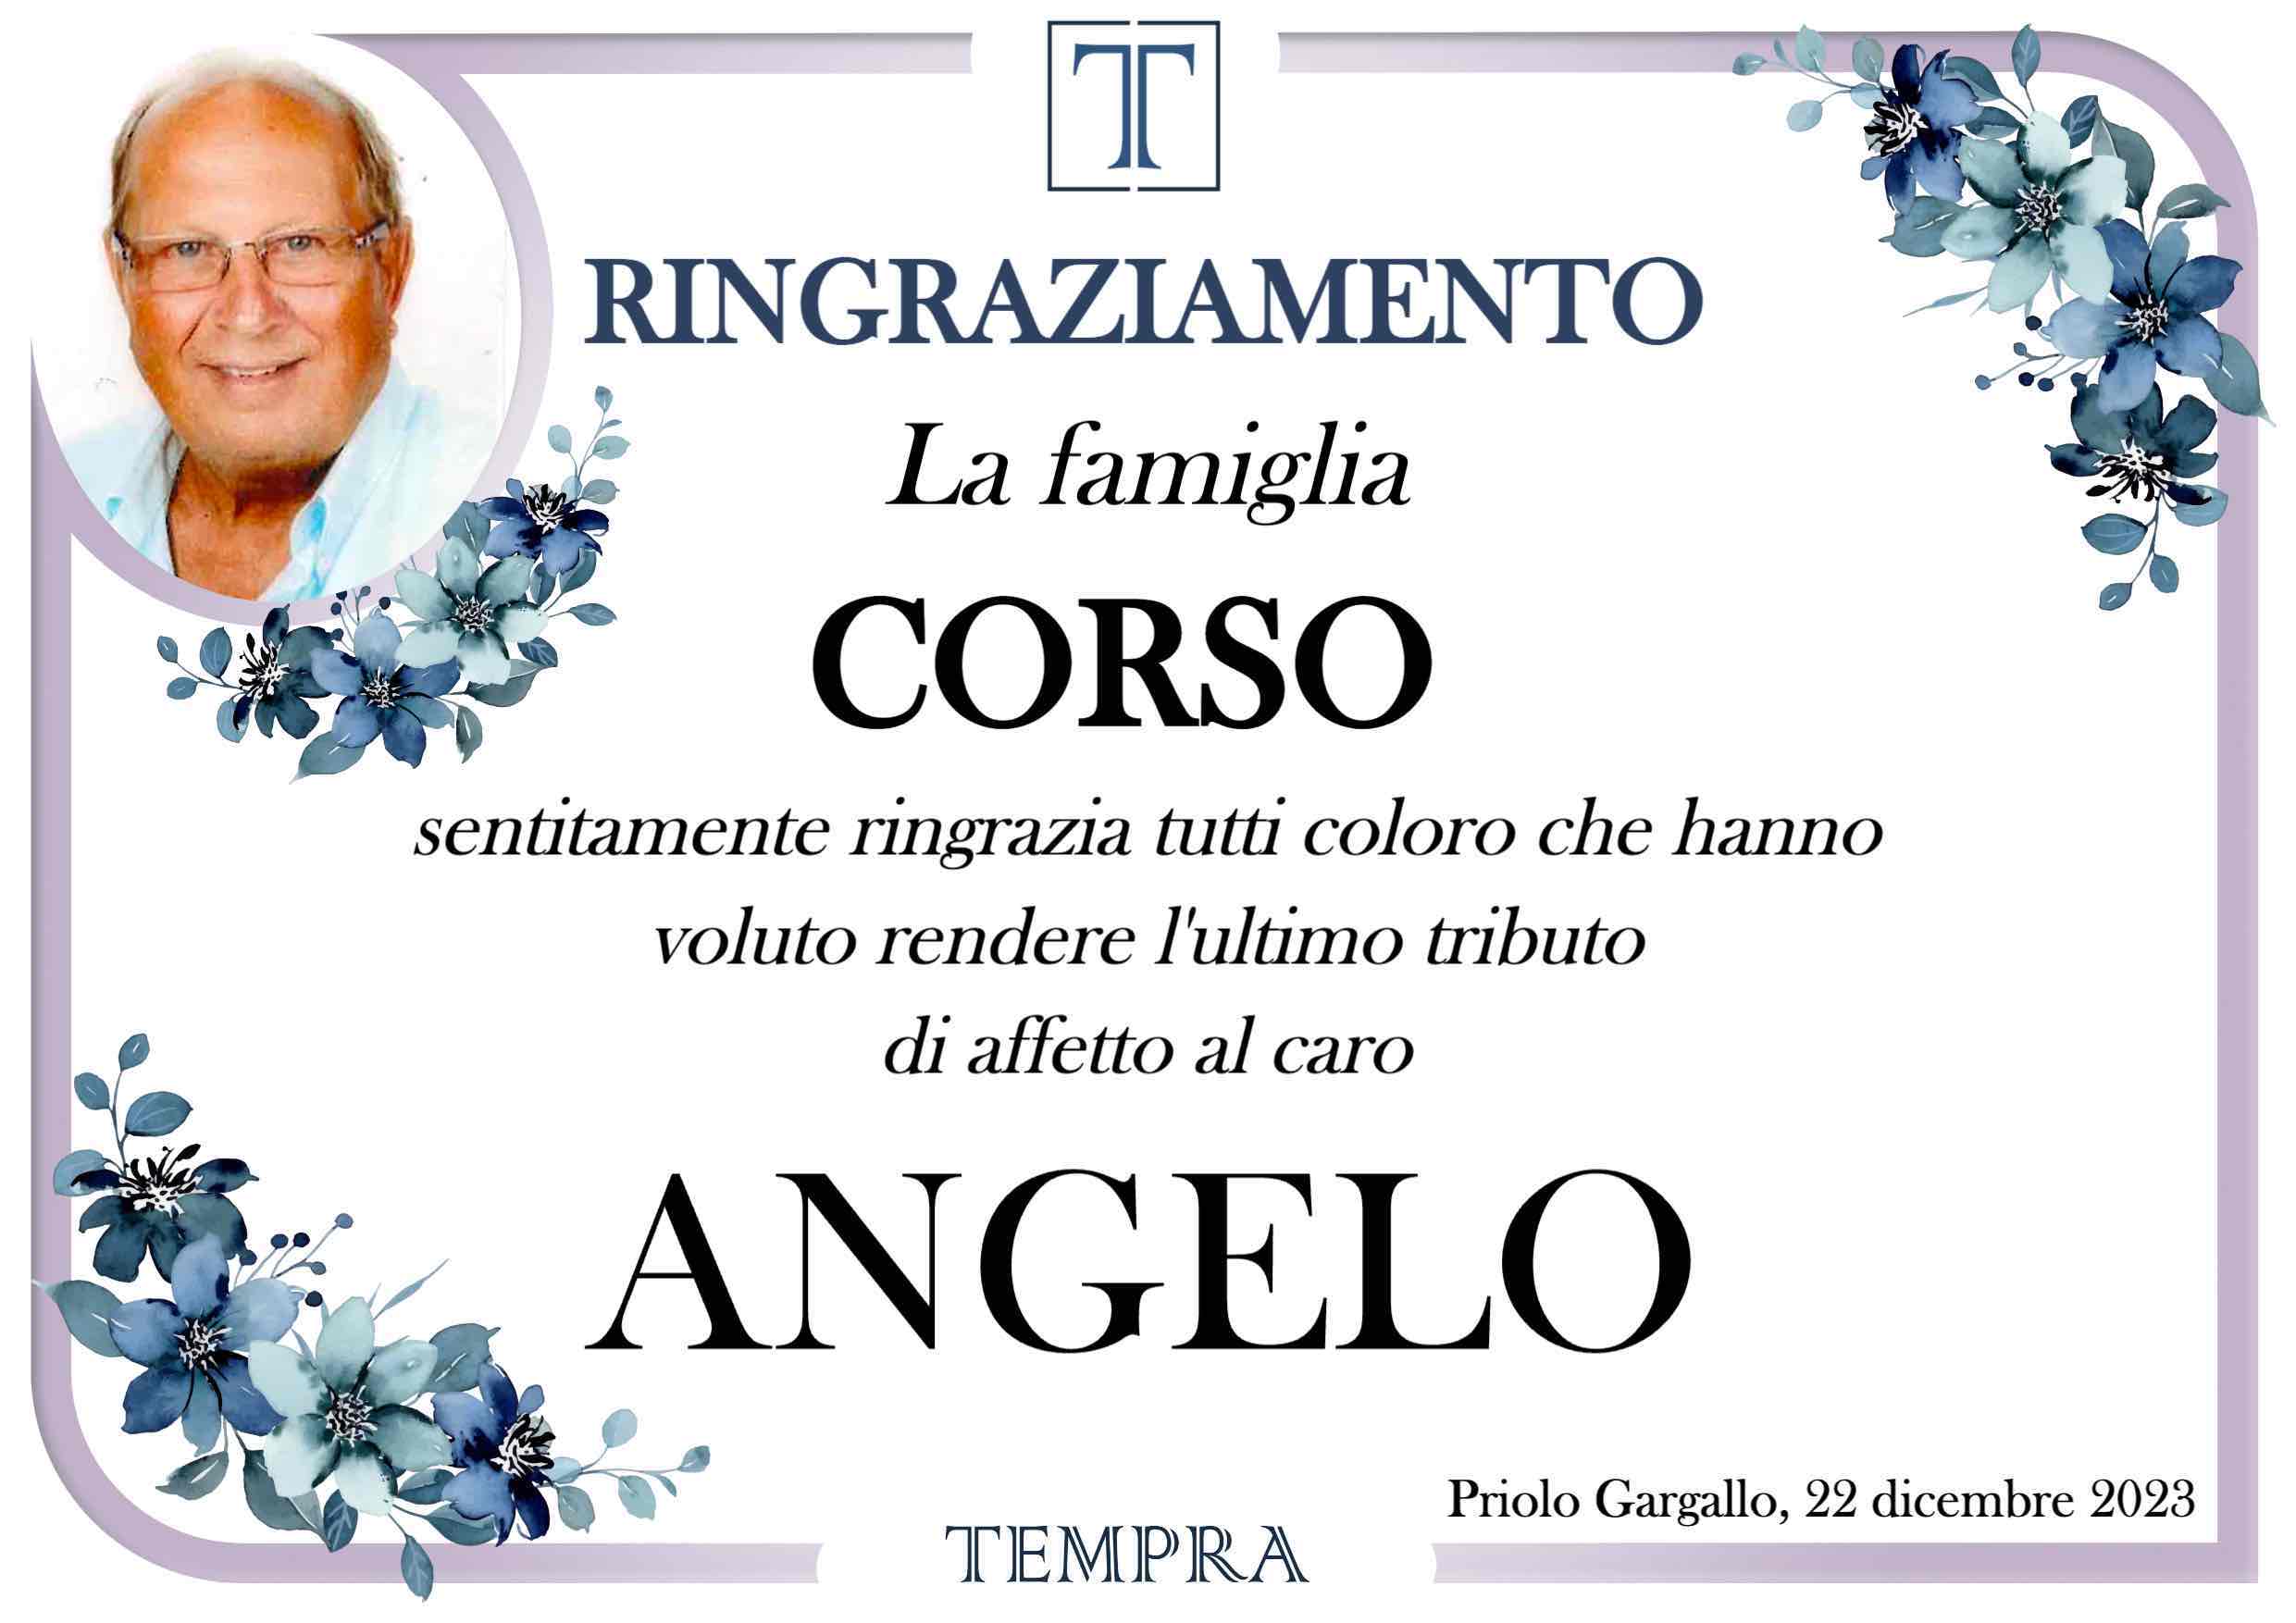 Angelo Corso